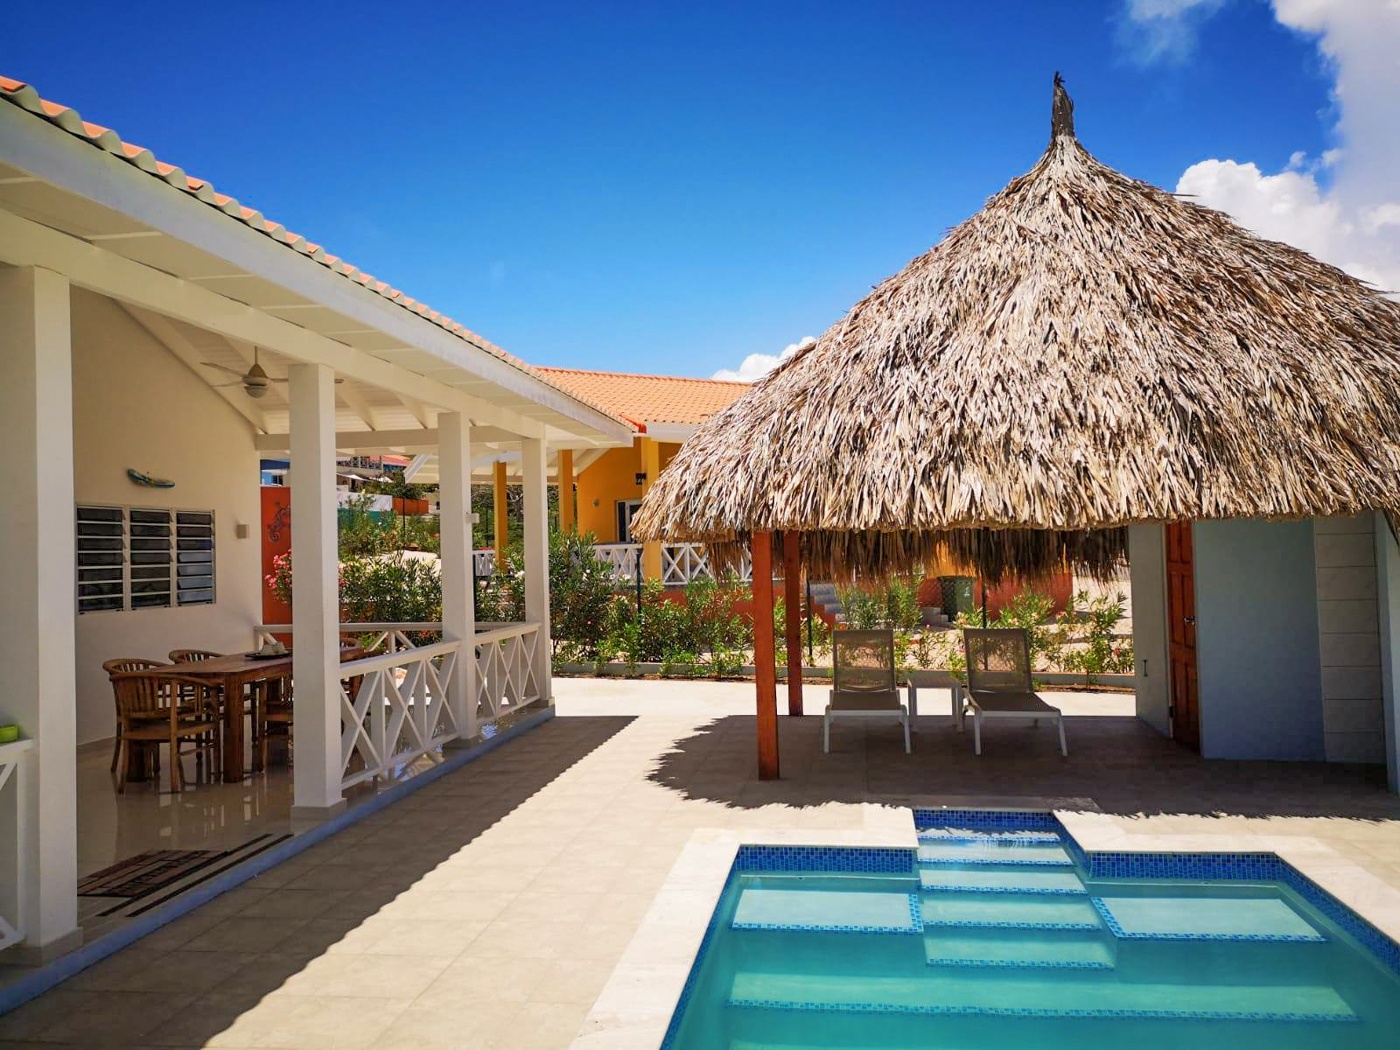 Aussenbereich mit Pool und Palapa, Ferienhaus Villa Kasia auf Curacao